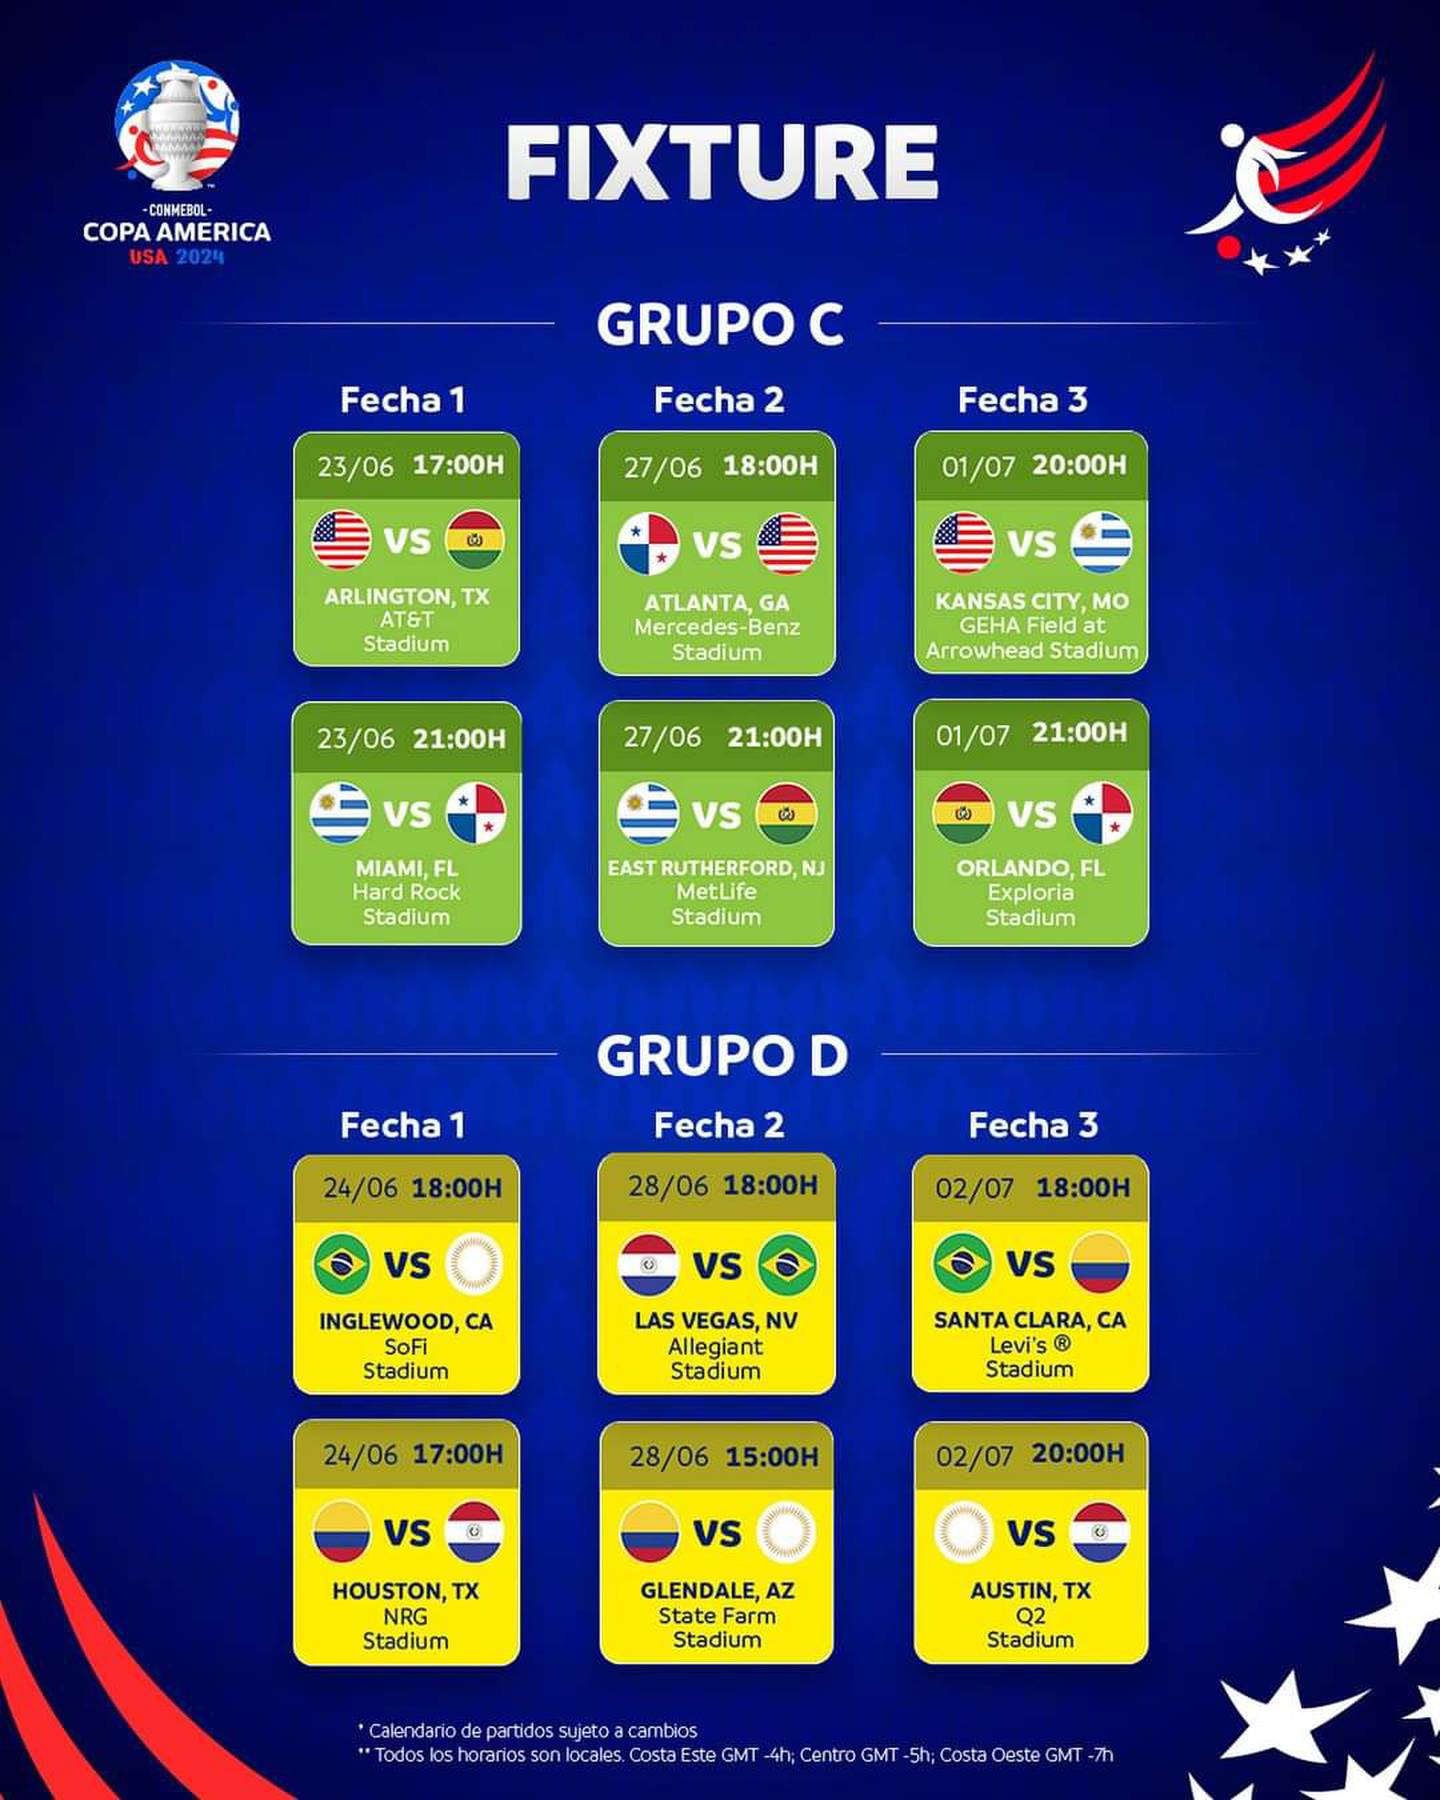 La Selección de Costa Rica debutaría ante Brasil, luego jugaría contra Colombia y cerraría frente a Paraguay, si clasifica a la Copa América 2024.